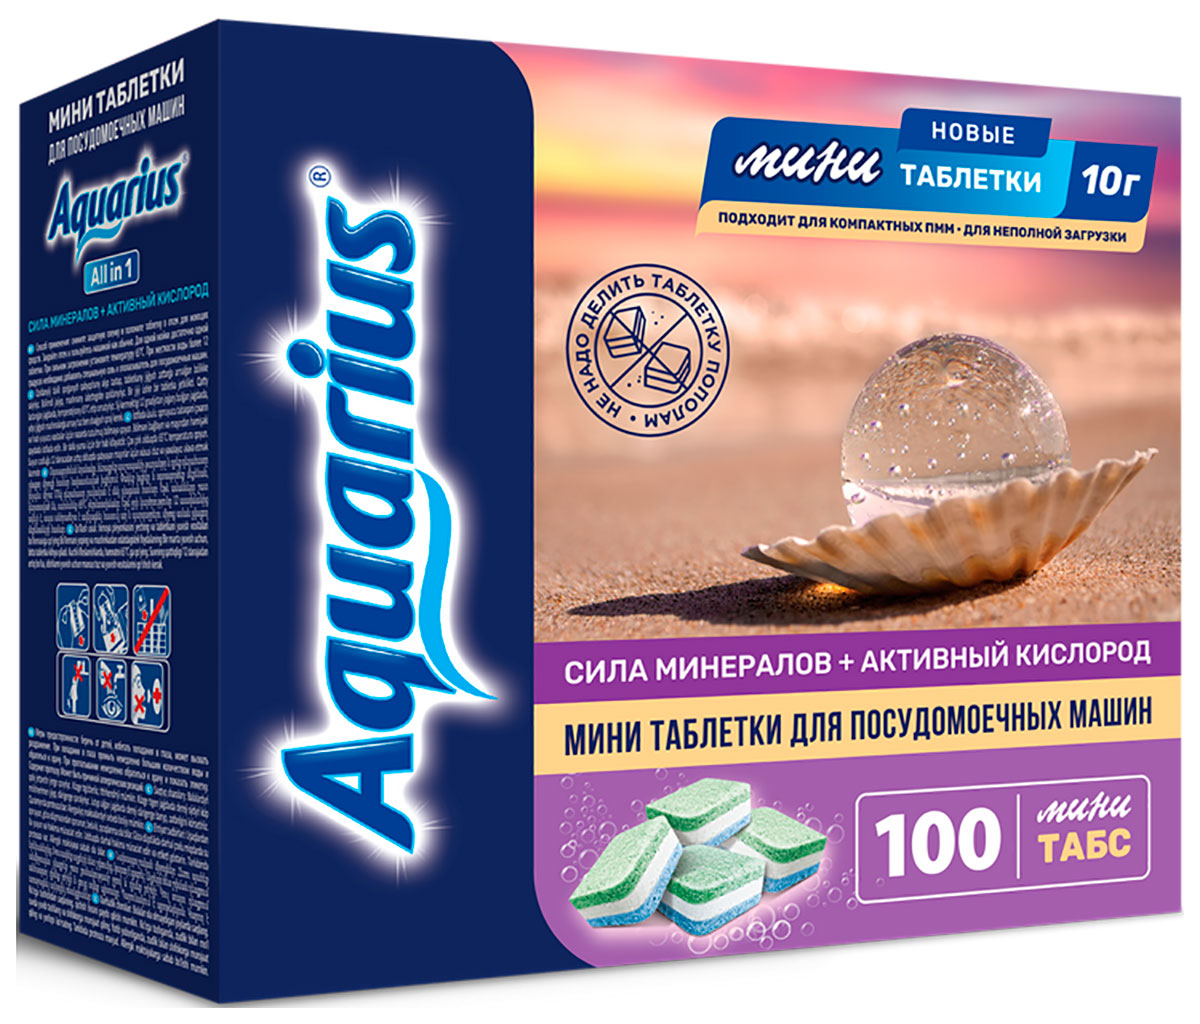 Таблетки Aquarius ''Сила минералов + Активный кислород: All in1'' mini tabs, 100 таб.